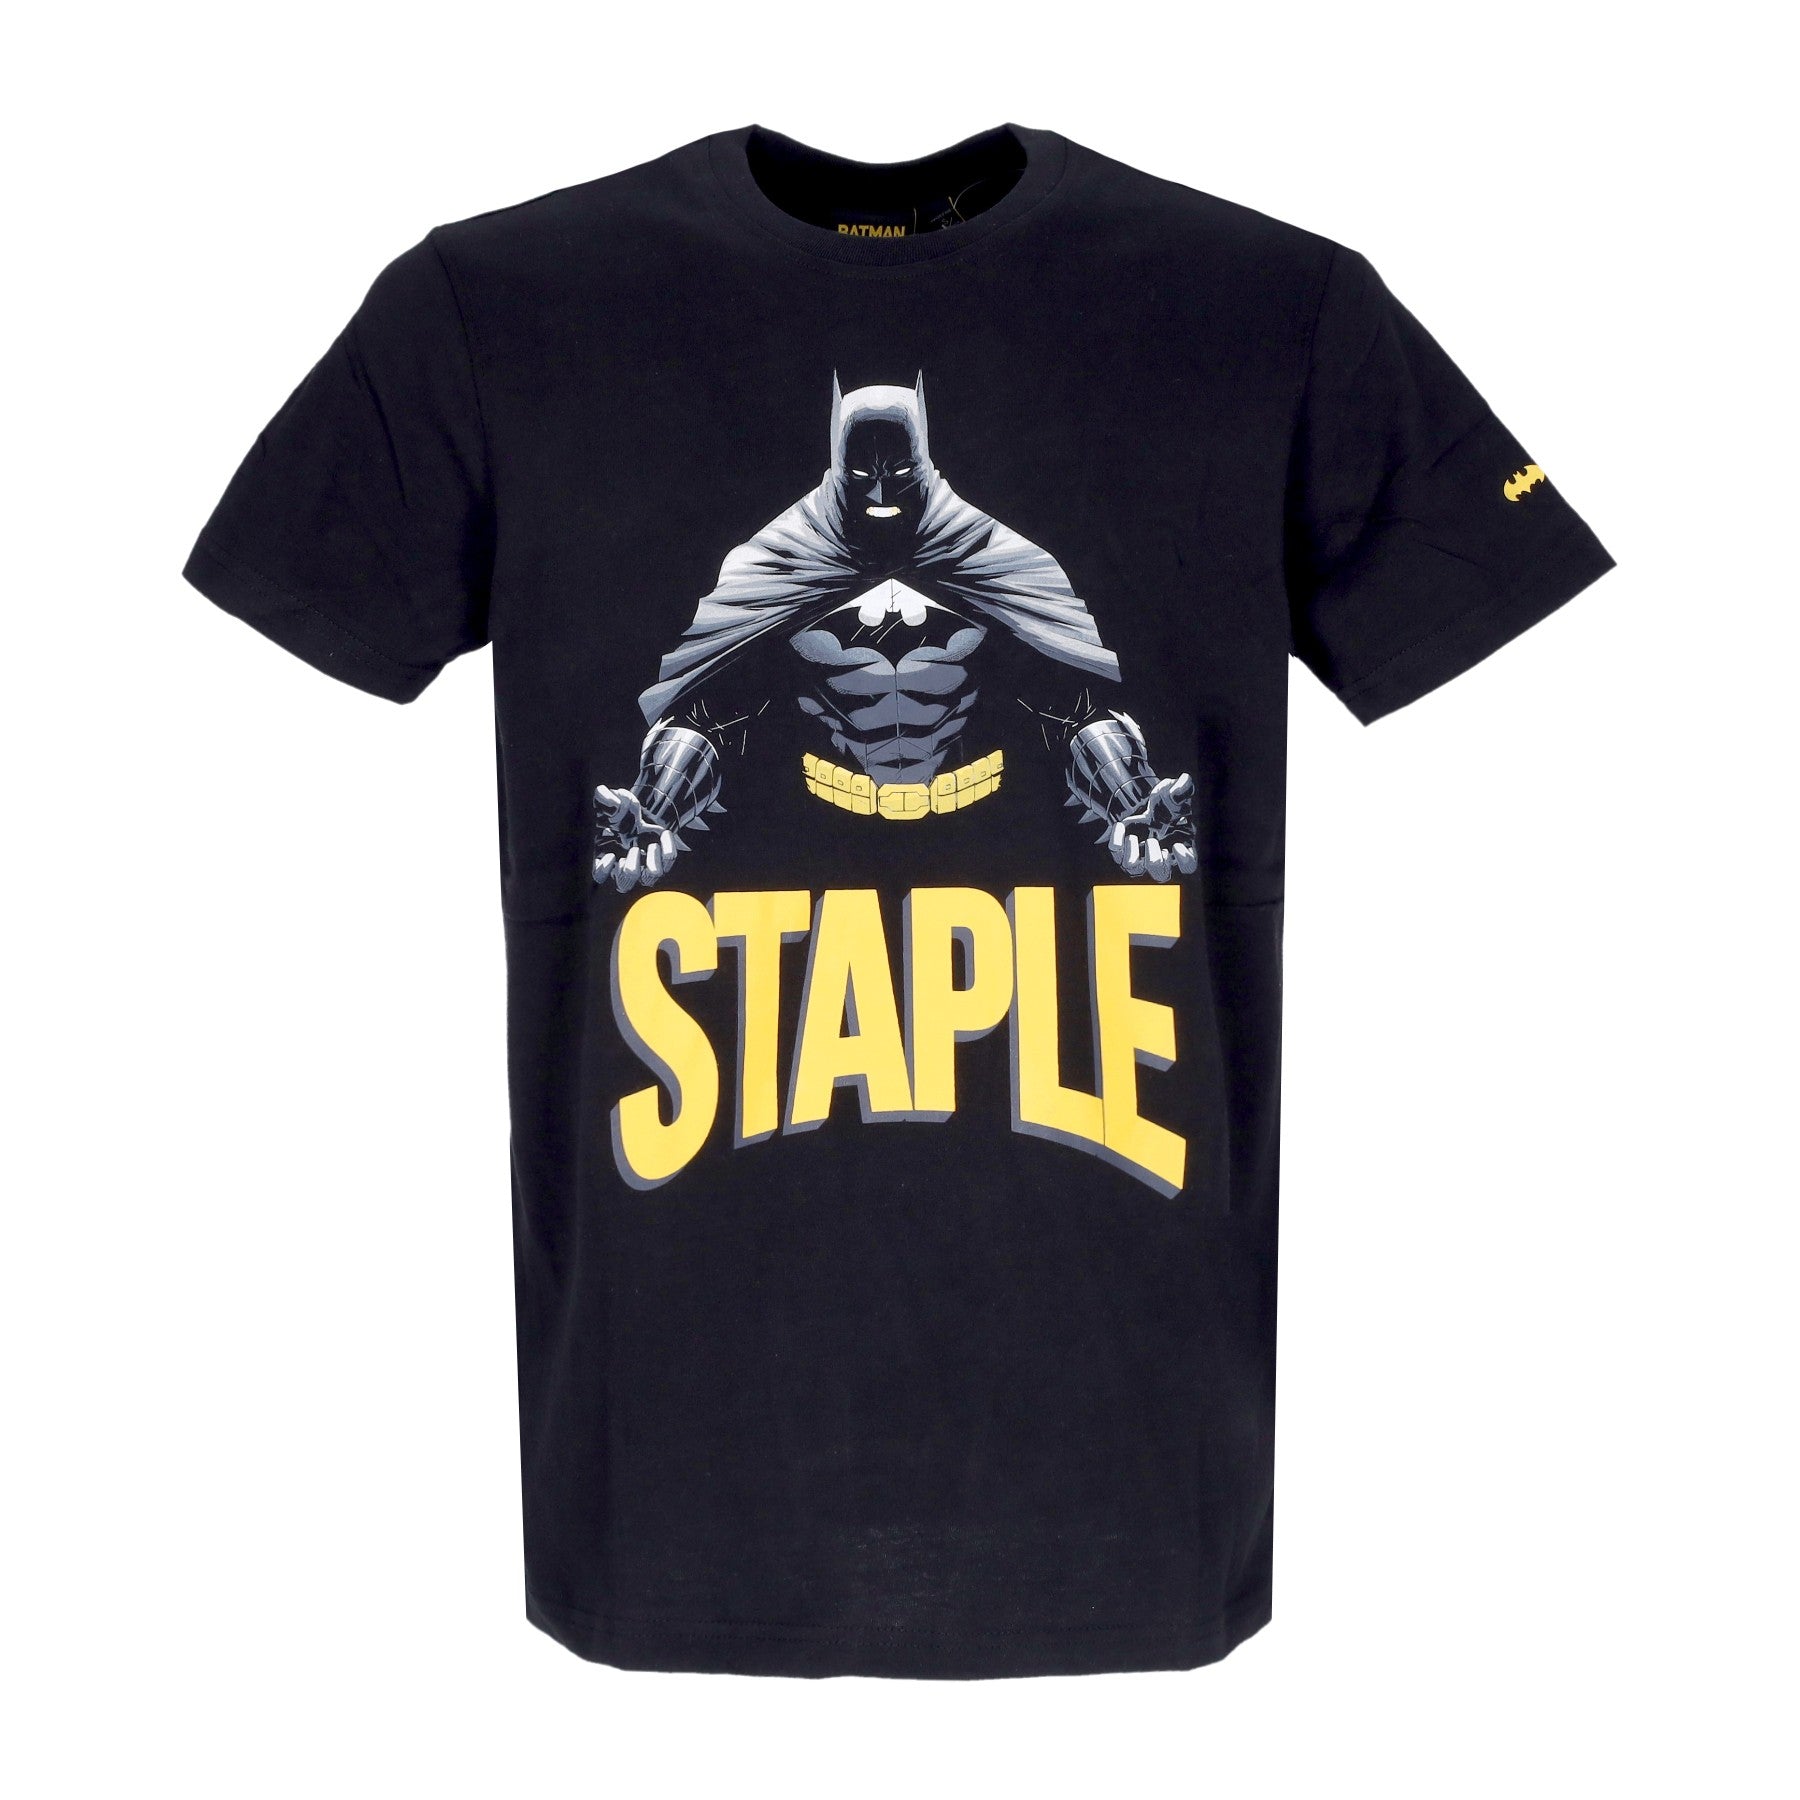 Staple, Maglietta Uomo  Graphic Tee X Batman, Black